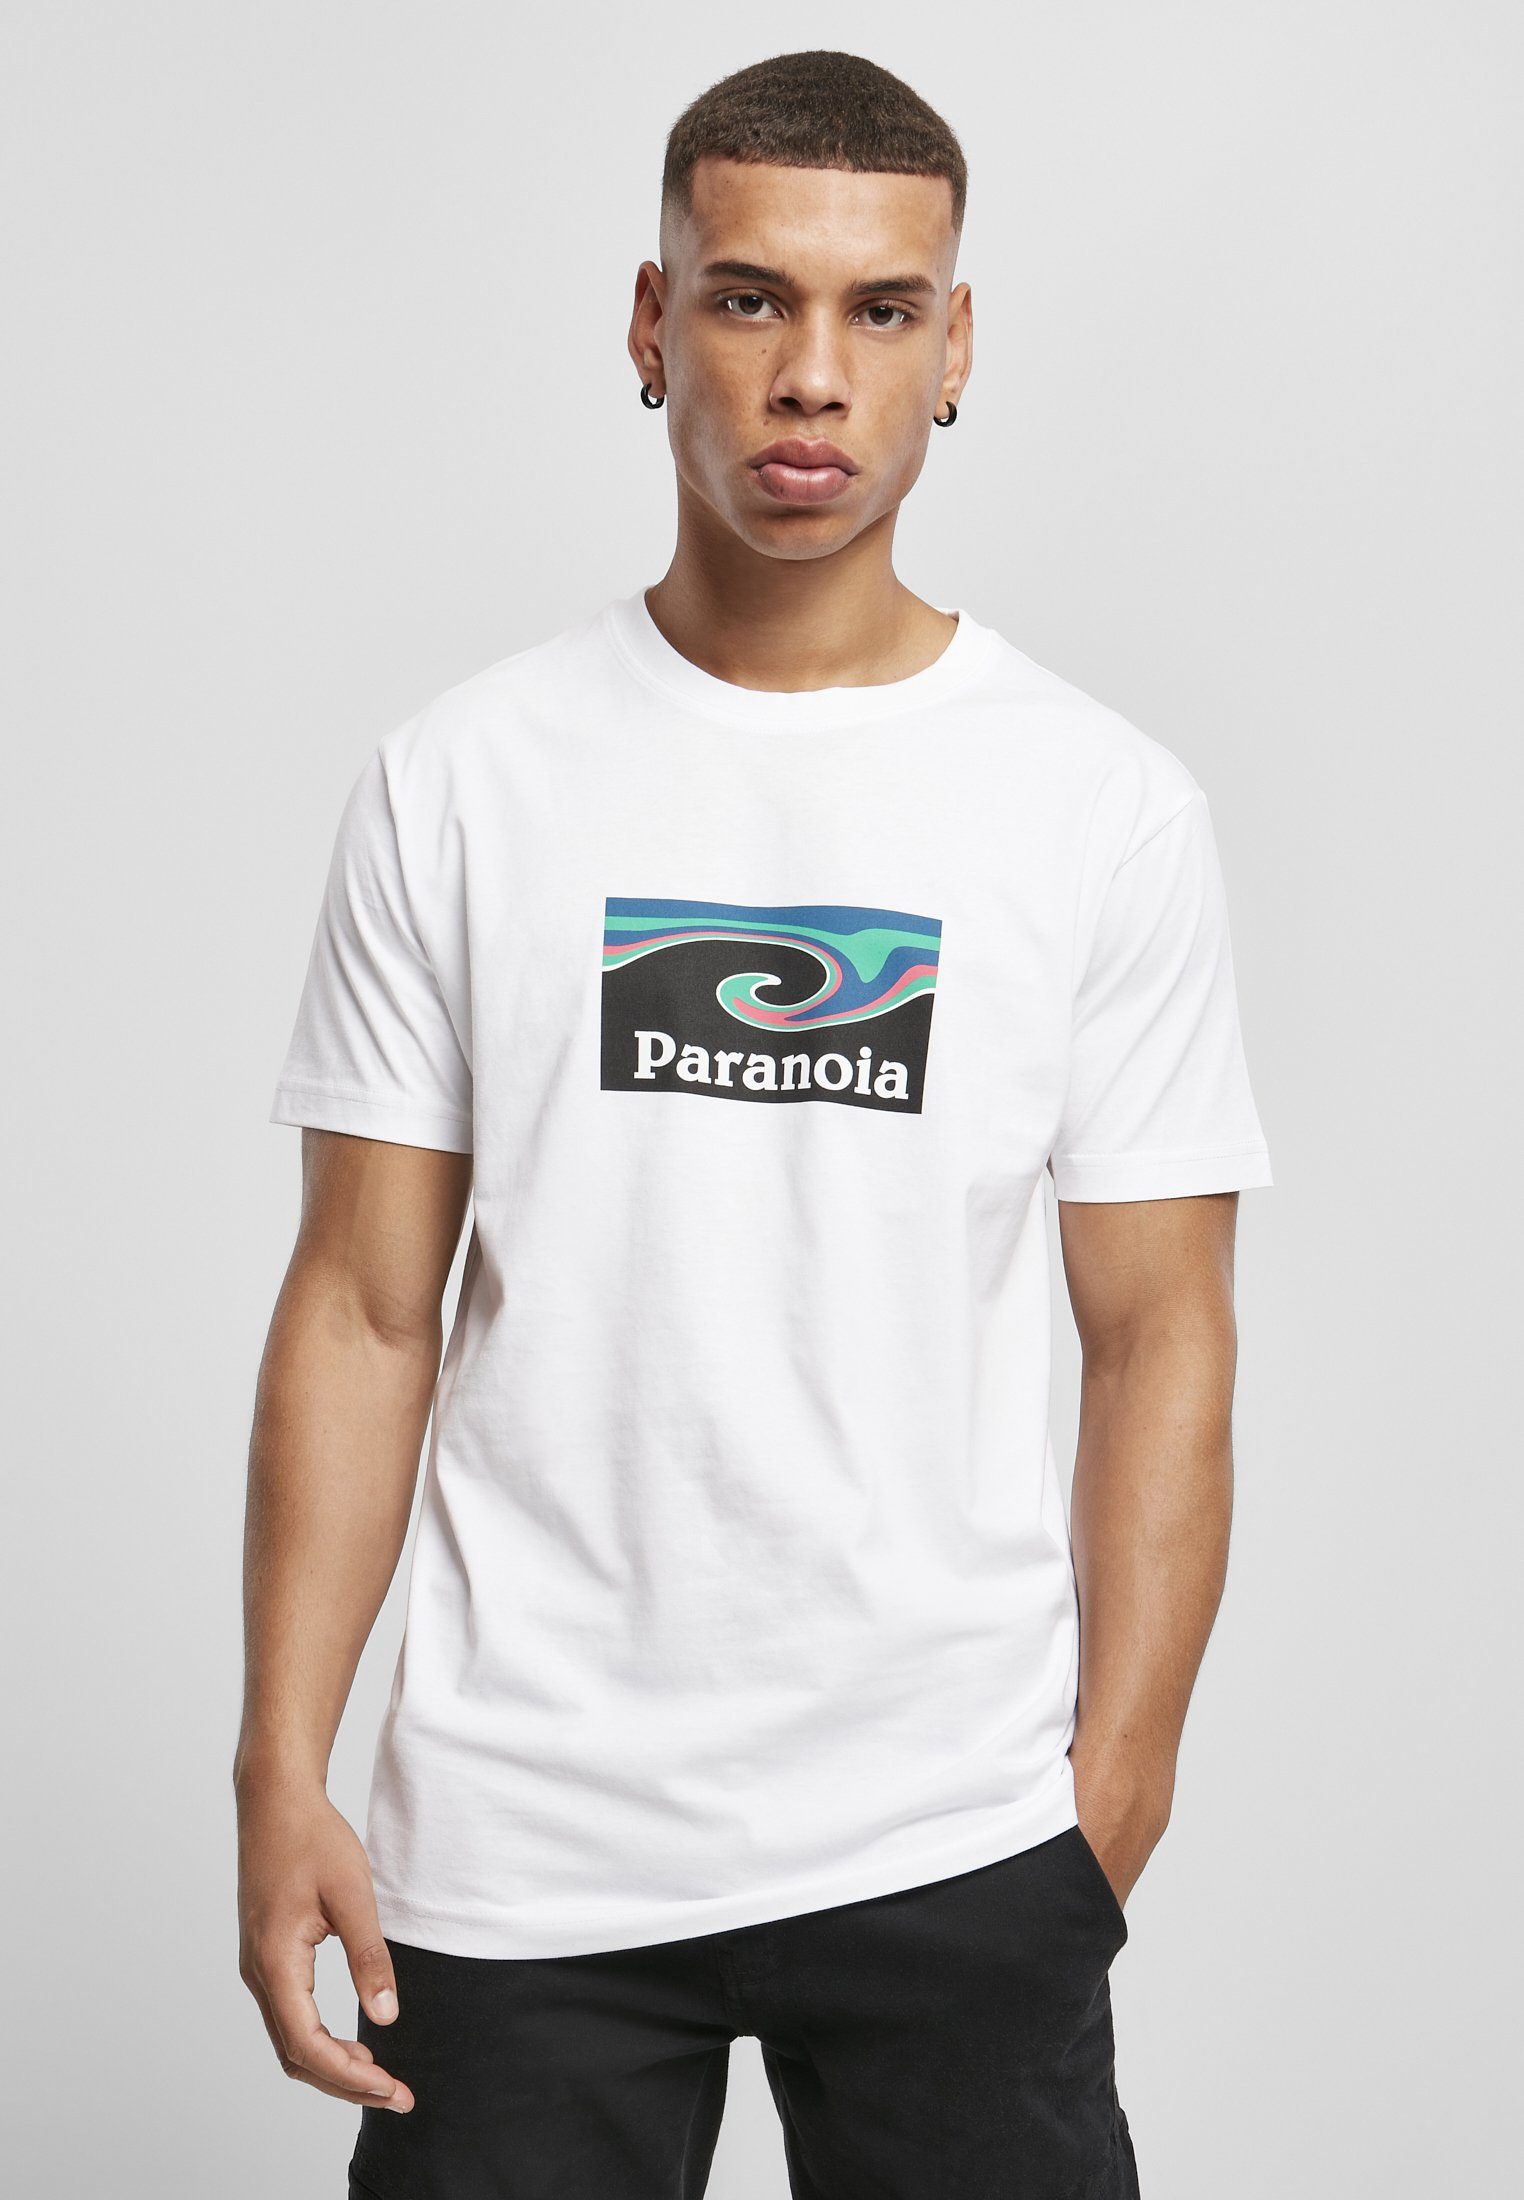 Paranoia Herren Tee MisterTee T-Shirt (1-tlg)